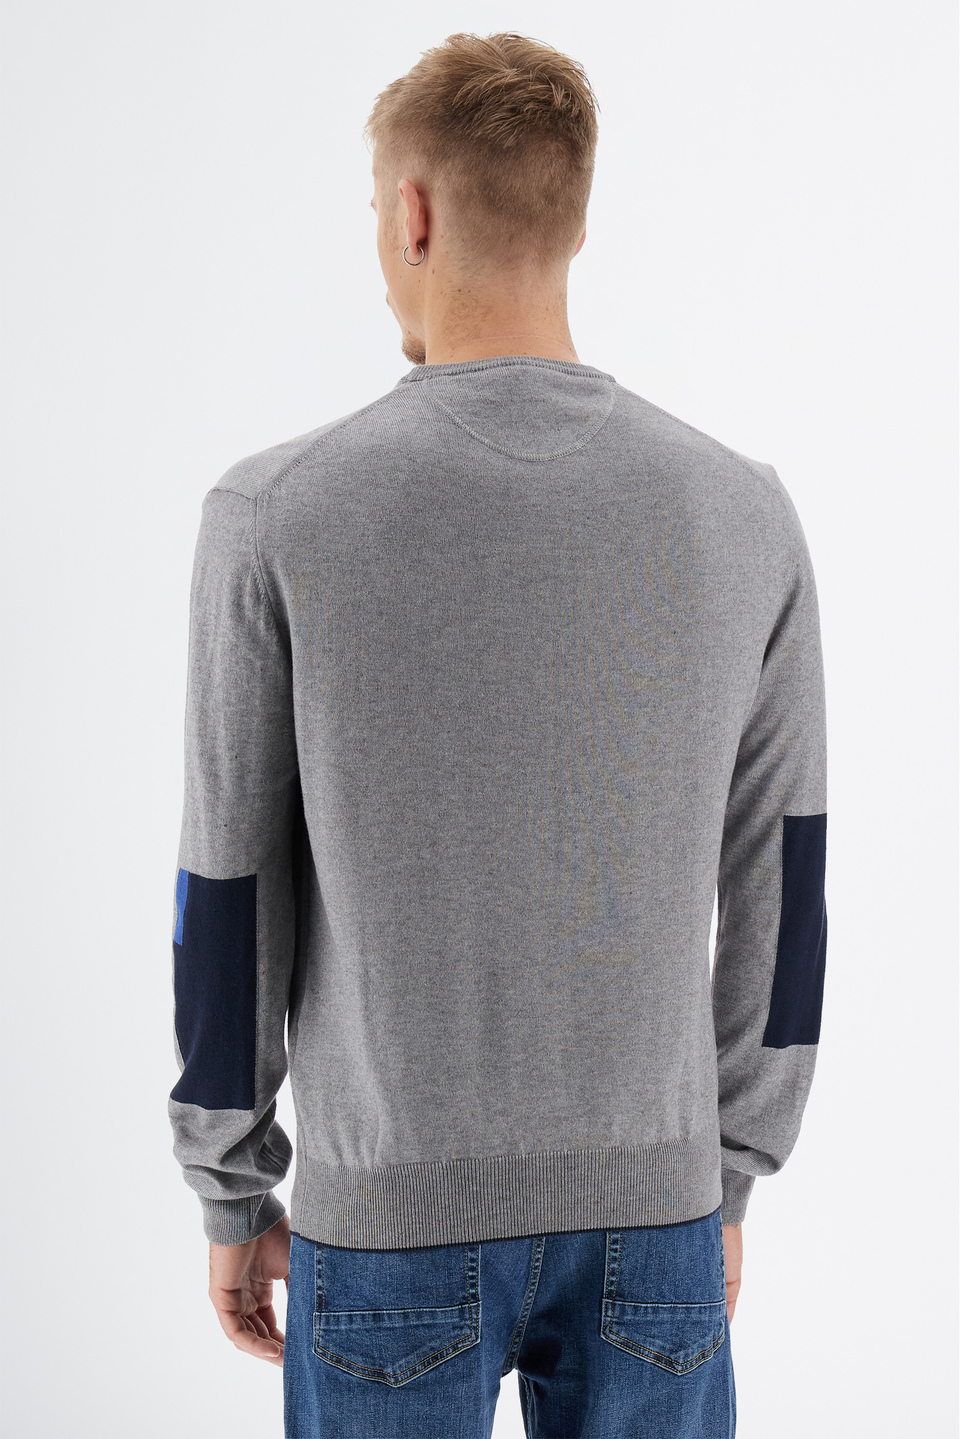 Maglia tricot da uomo a maniche lunghe in cotone misto lana regular fit girocollo | La Martina - Official Online Shop